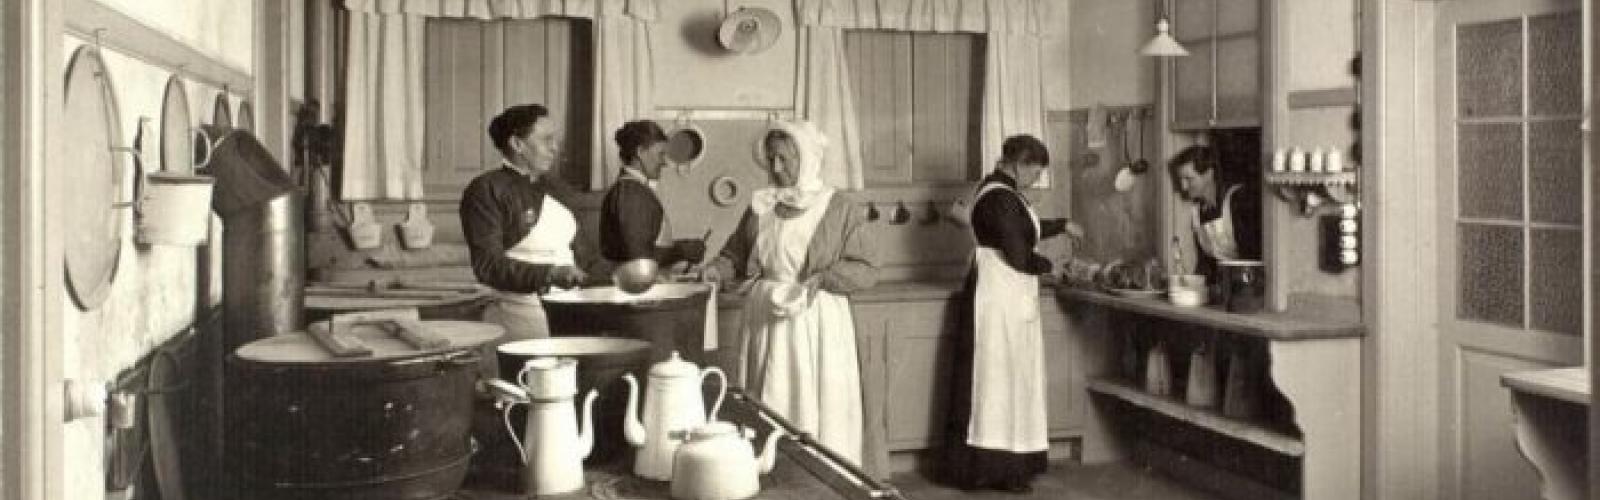 Fedtekælderens køkken 1917-18